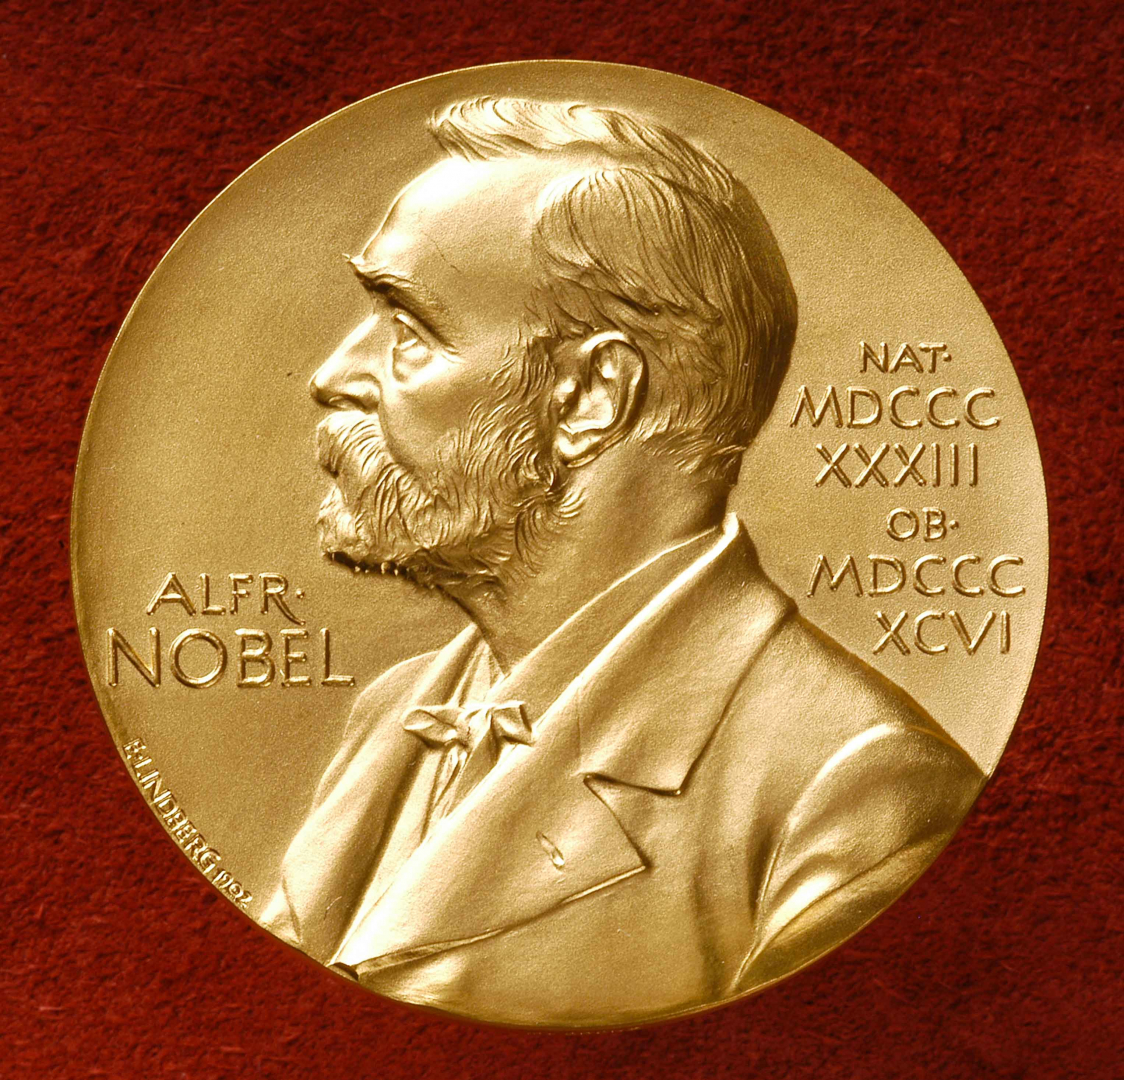 Объявление лауреатов Нобелевской премии